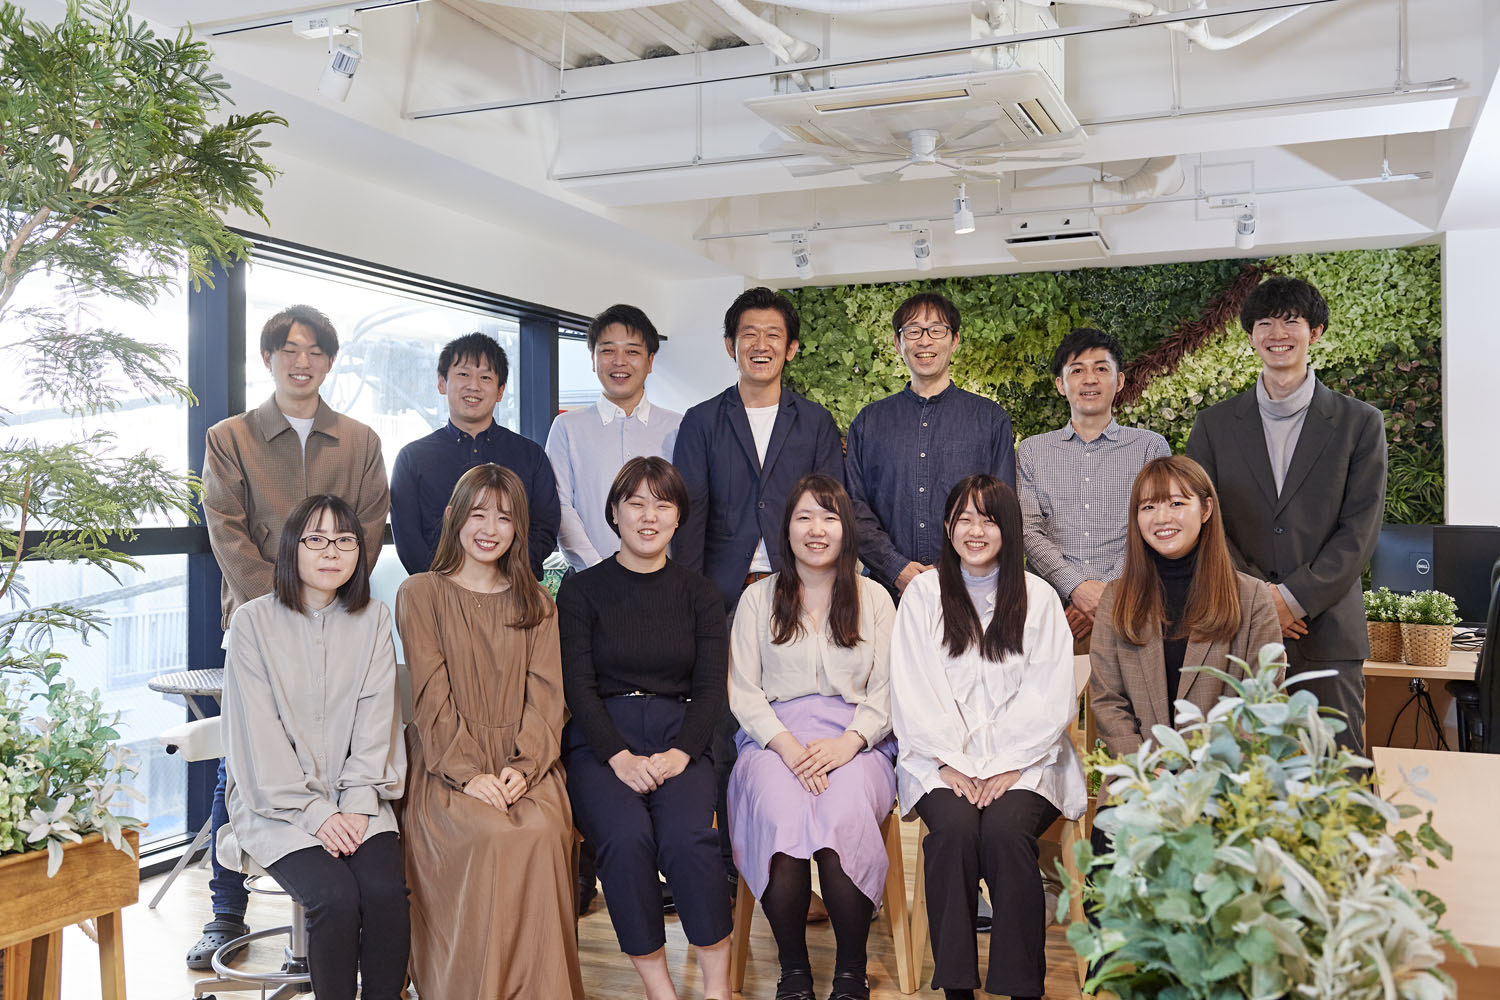 株式会社ネオインデックスは1999年設立。東京池袋本社は、海外のデザインスタジオをイメージしたという開放的なオフィスを構えている。